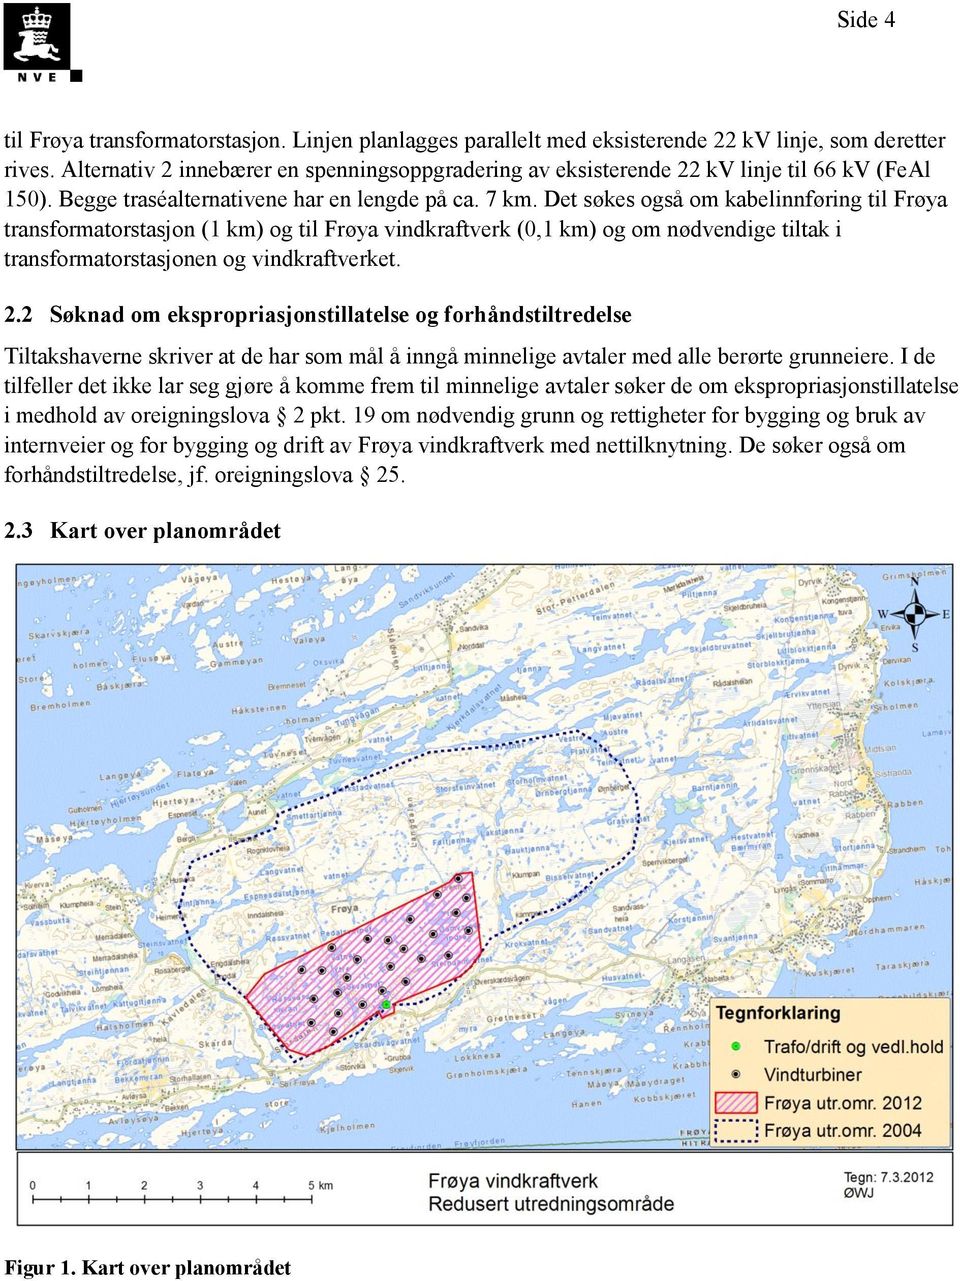 Det søkes også om kabelinnføring til Frøya transformatorstasjon (1 km) og til Frøya vindkraftverk (0,1 km) og om nødvendige tiltak i transformatorstasjonen og vindkraftverket. 2.